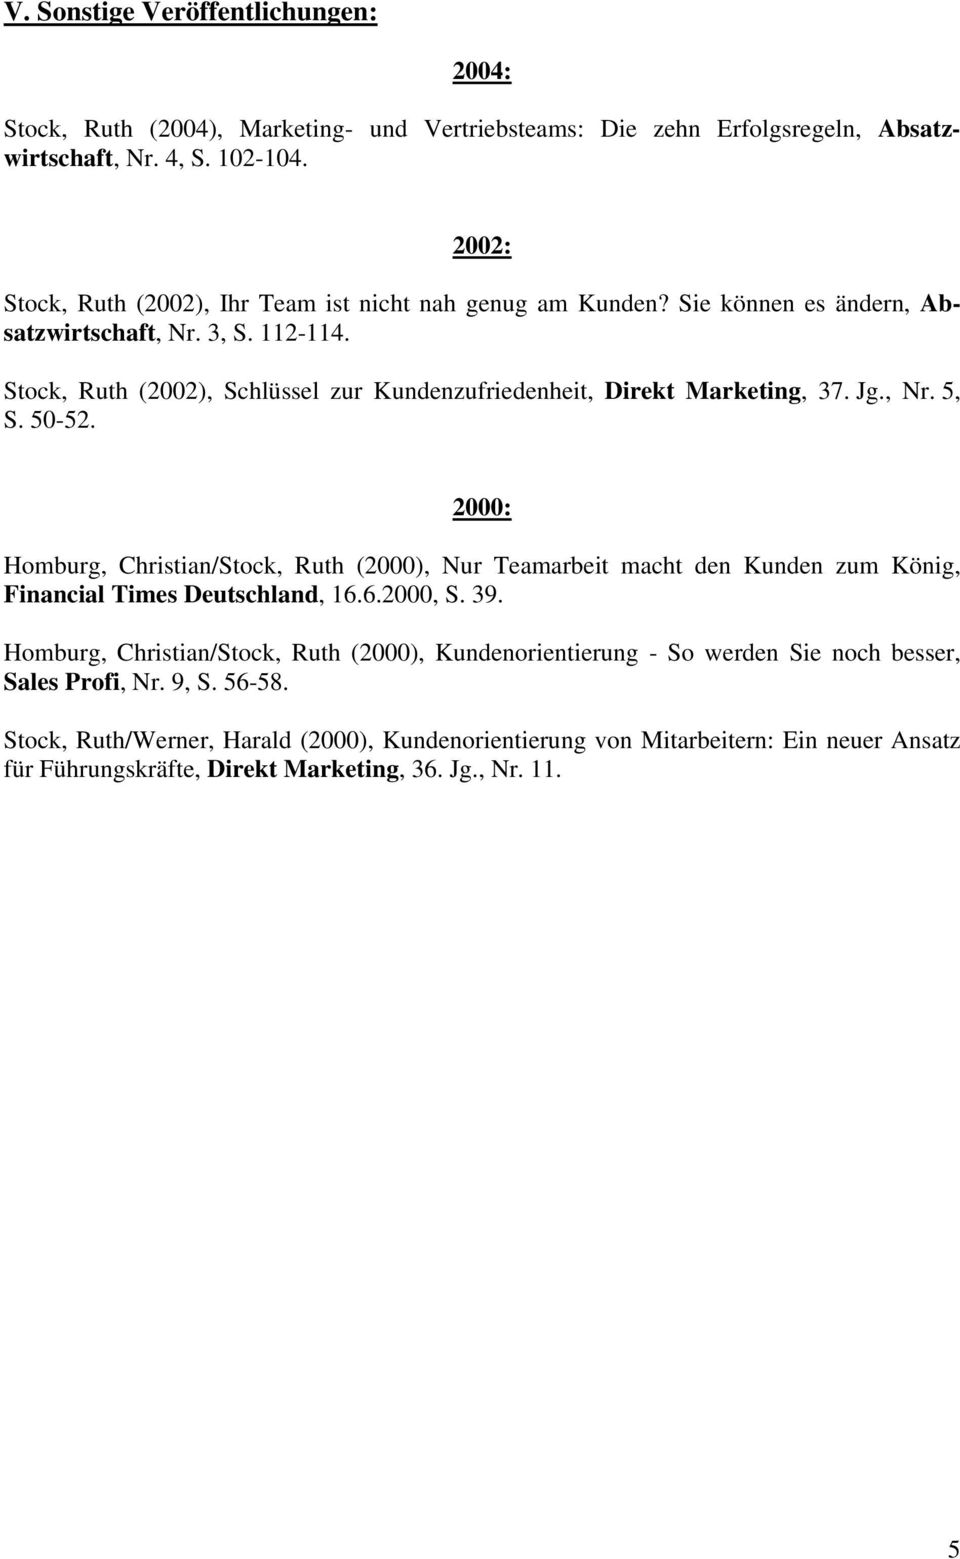 Stock, Ruth (2002), Schlüssel zur Kundenzufriedenheit, Direkt Marketing, 37. Jg., Nr. 5, S. 50-52.